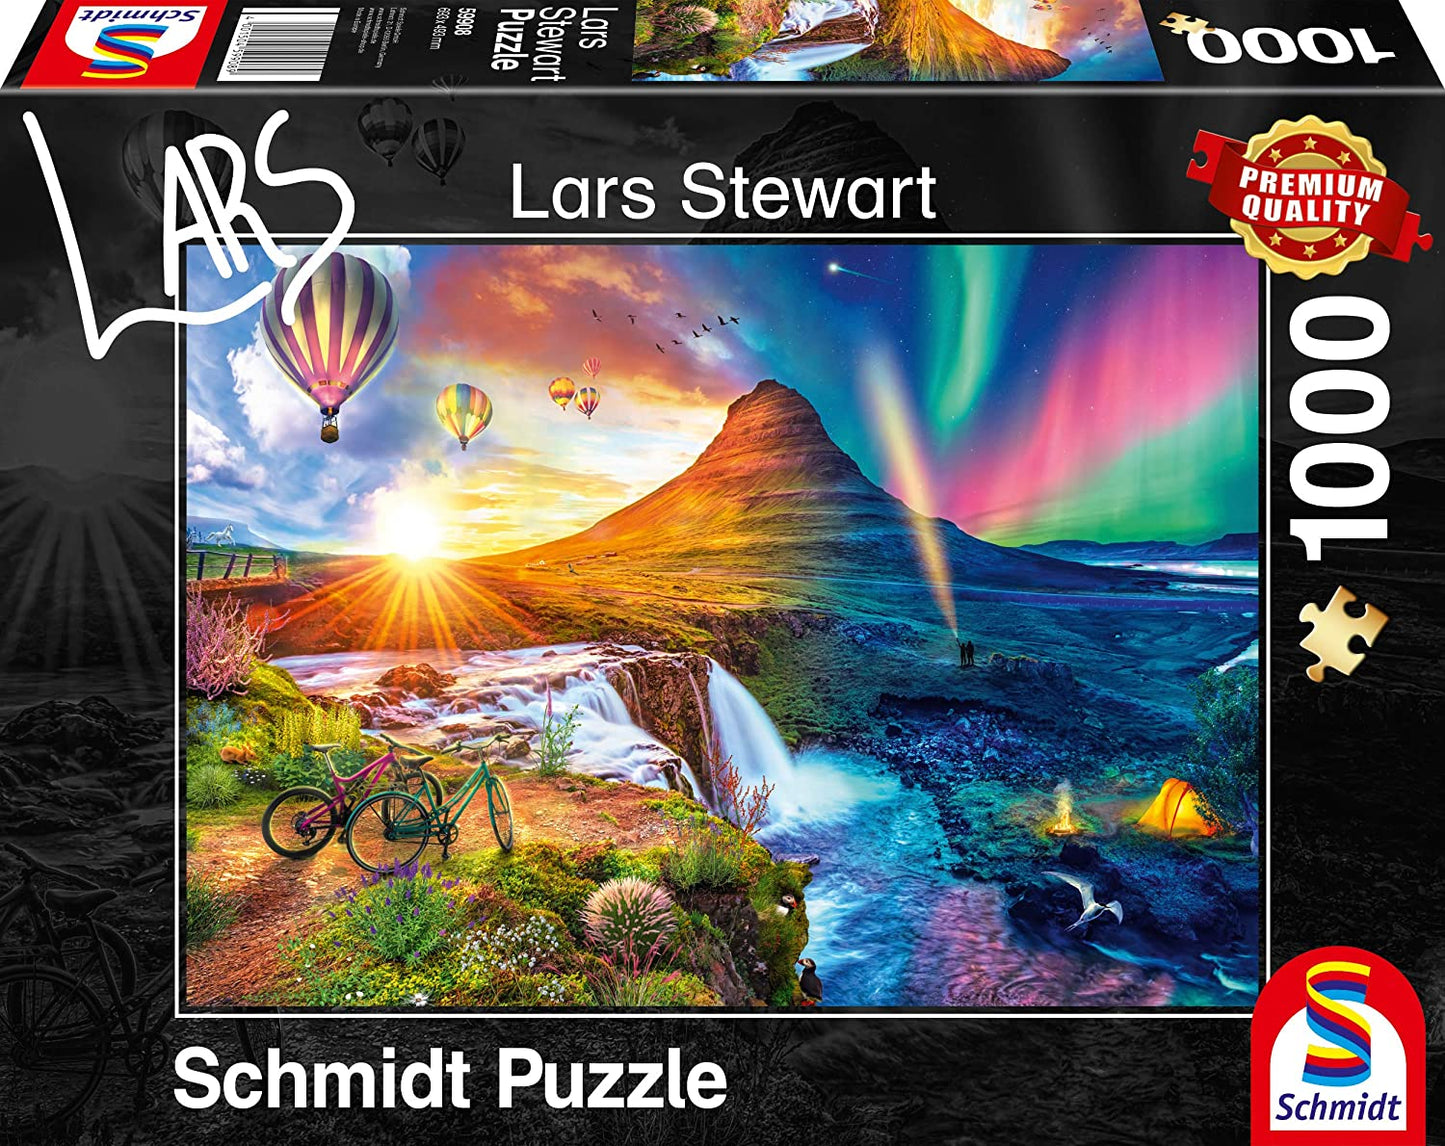 Schmidt - Lars Stewart: Iceland Night & Day - 1000 Piece Jigsaw Puzzle